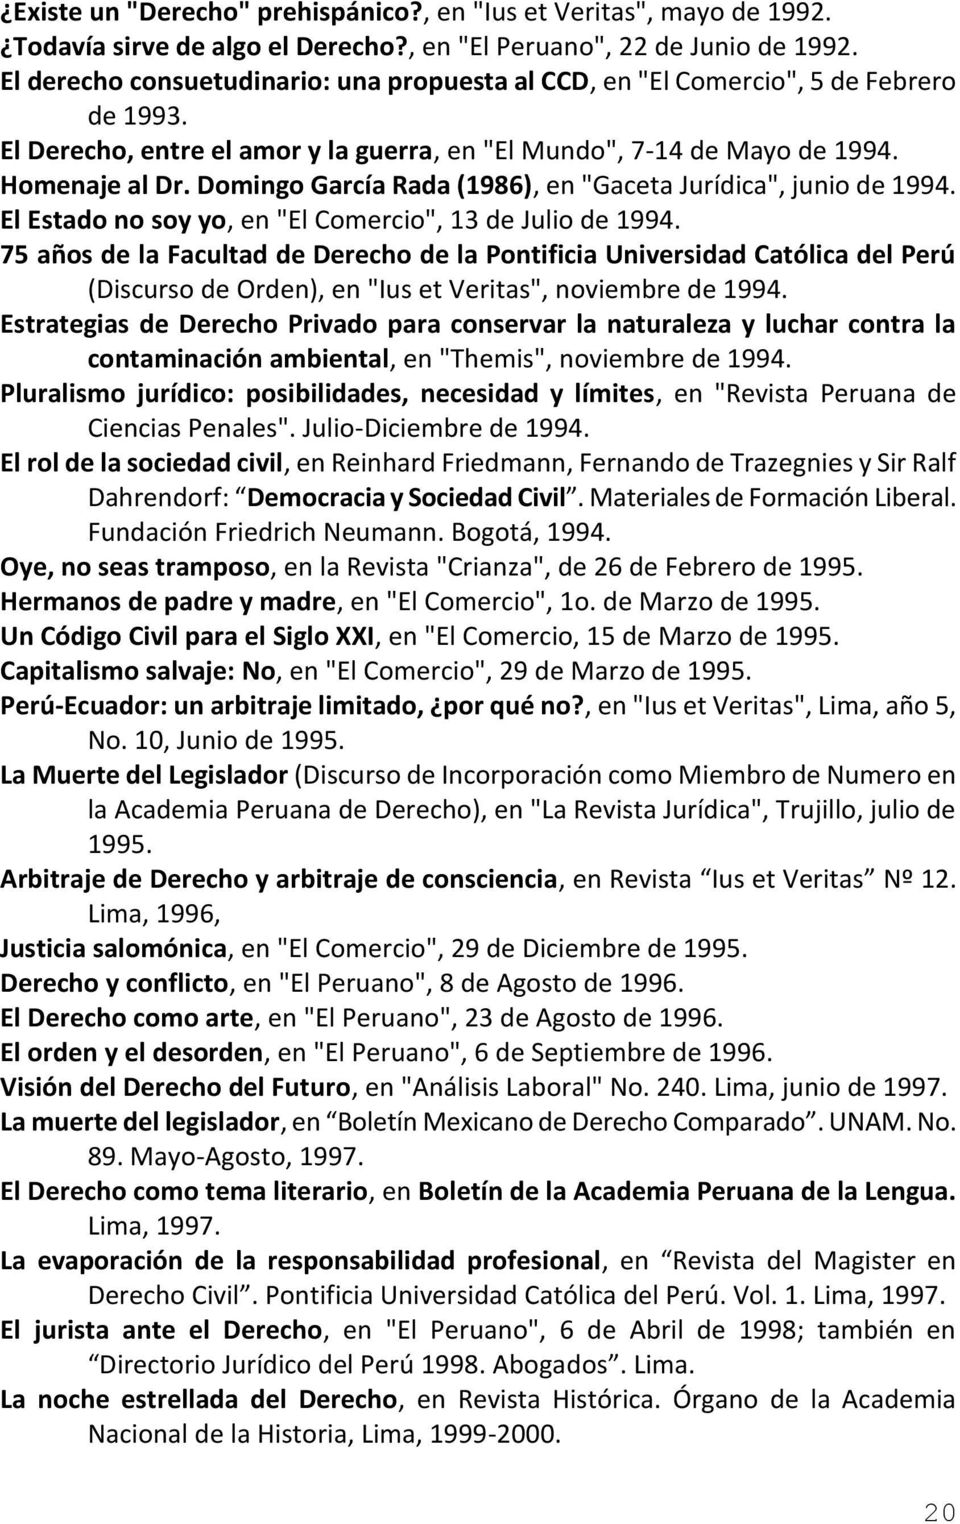 Domingo García Rada (1986), en "Gaceta Jurídica", junio de 1994. El Estado no soy yo, en "El Comercio", 13 de Julio de 1994.